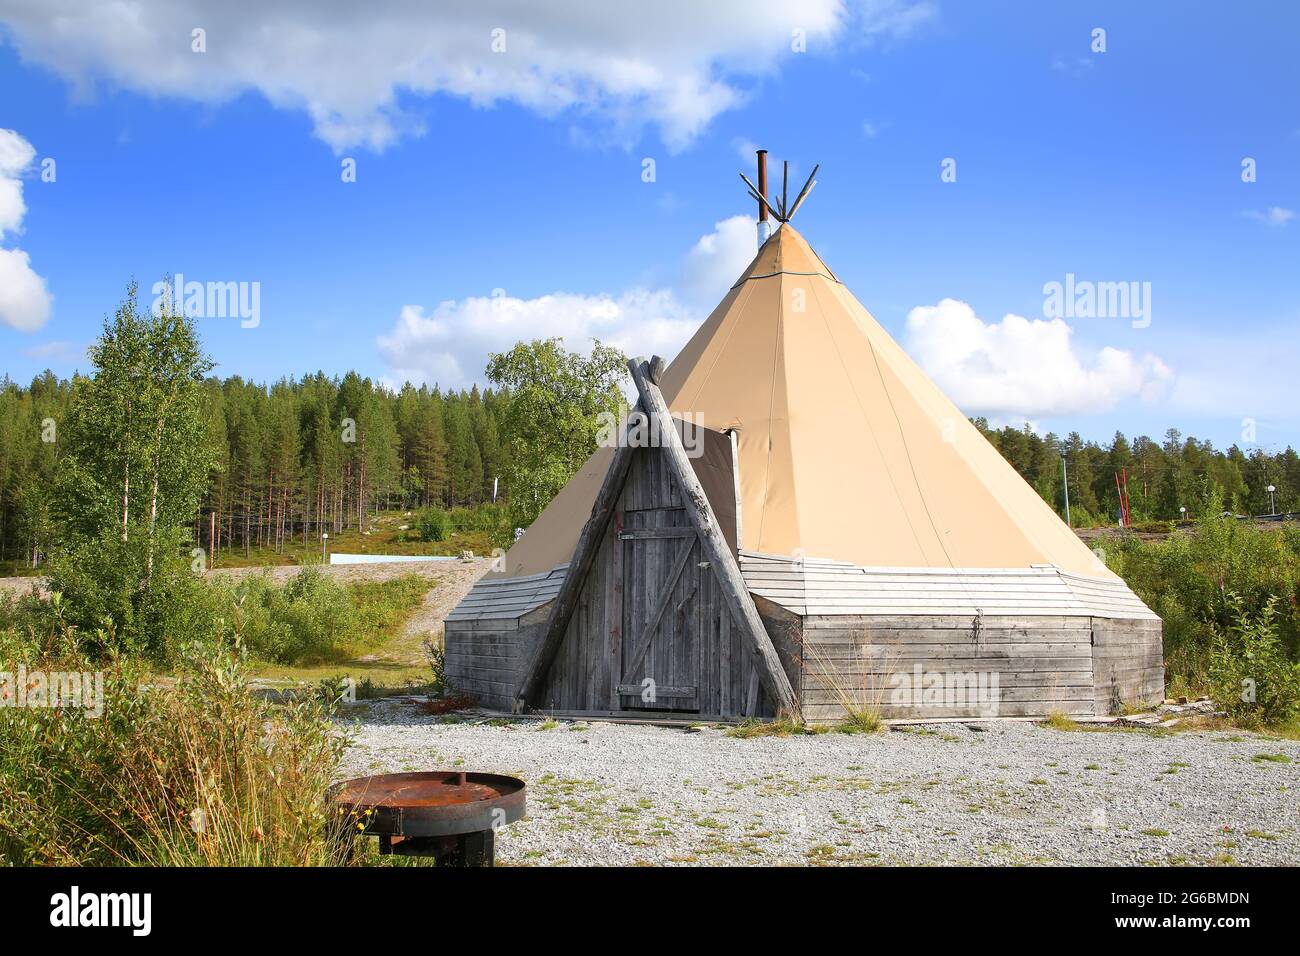 Das Zelt ist in einer wunderschönen Landschaft im Polarkreis in der Nähe von Polcirkeln, Nordschweden, Skandinavien, aufgestellt. Stockfoto